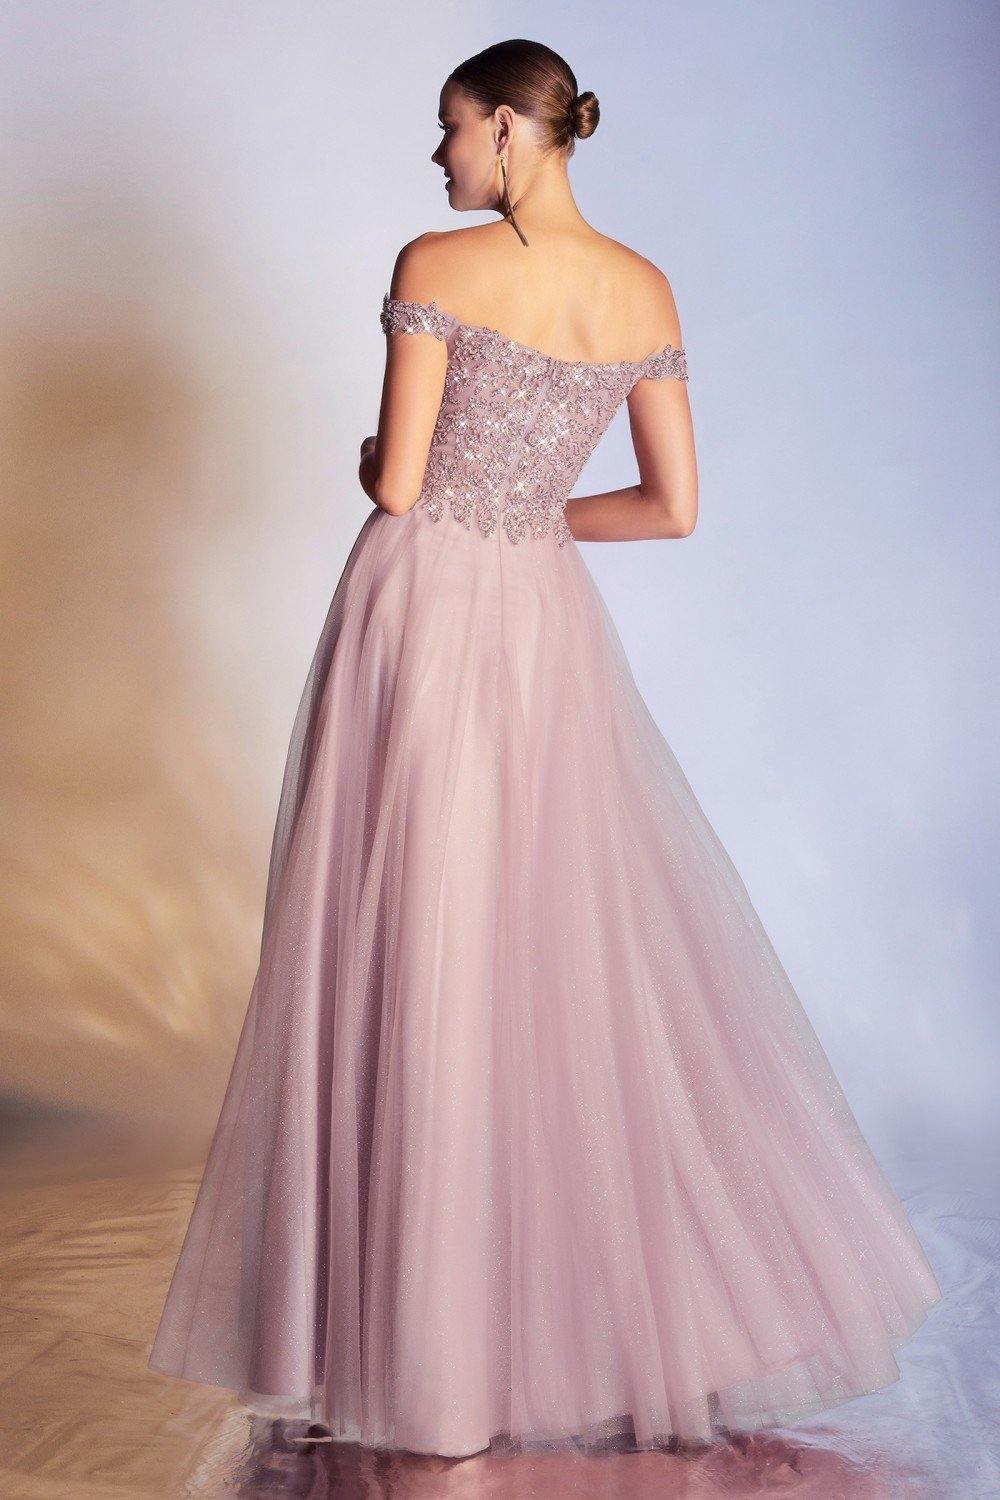 Off Shoulder Long Prom Dress - The Dress Outlet